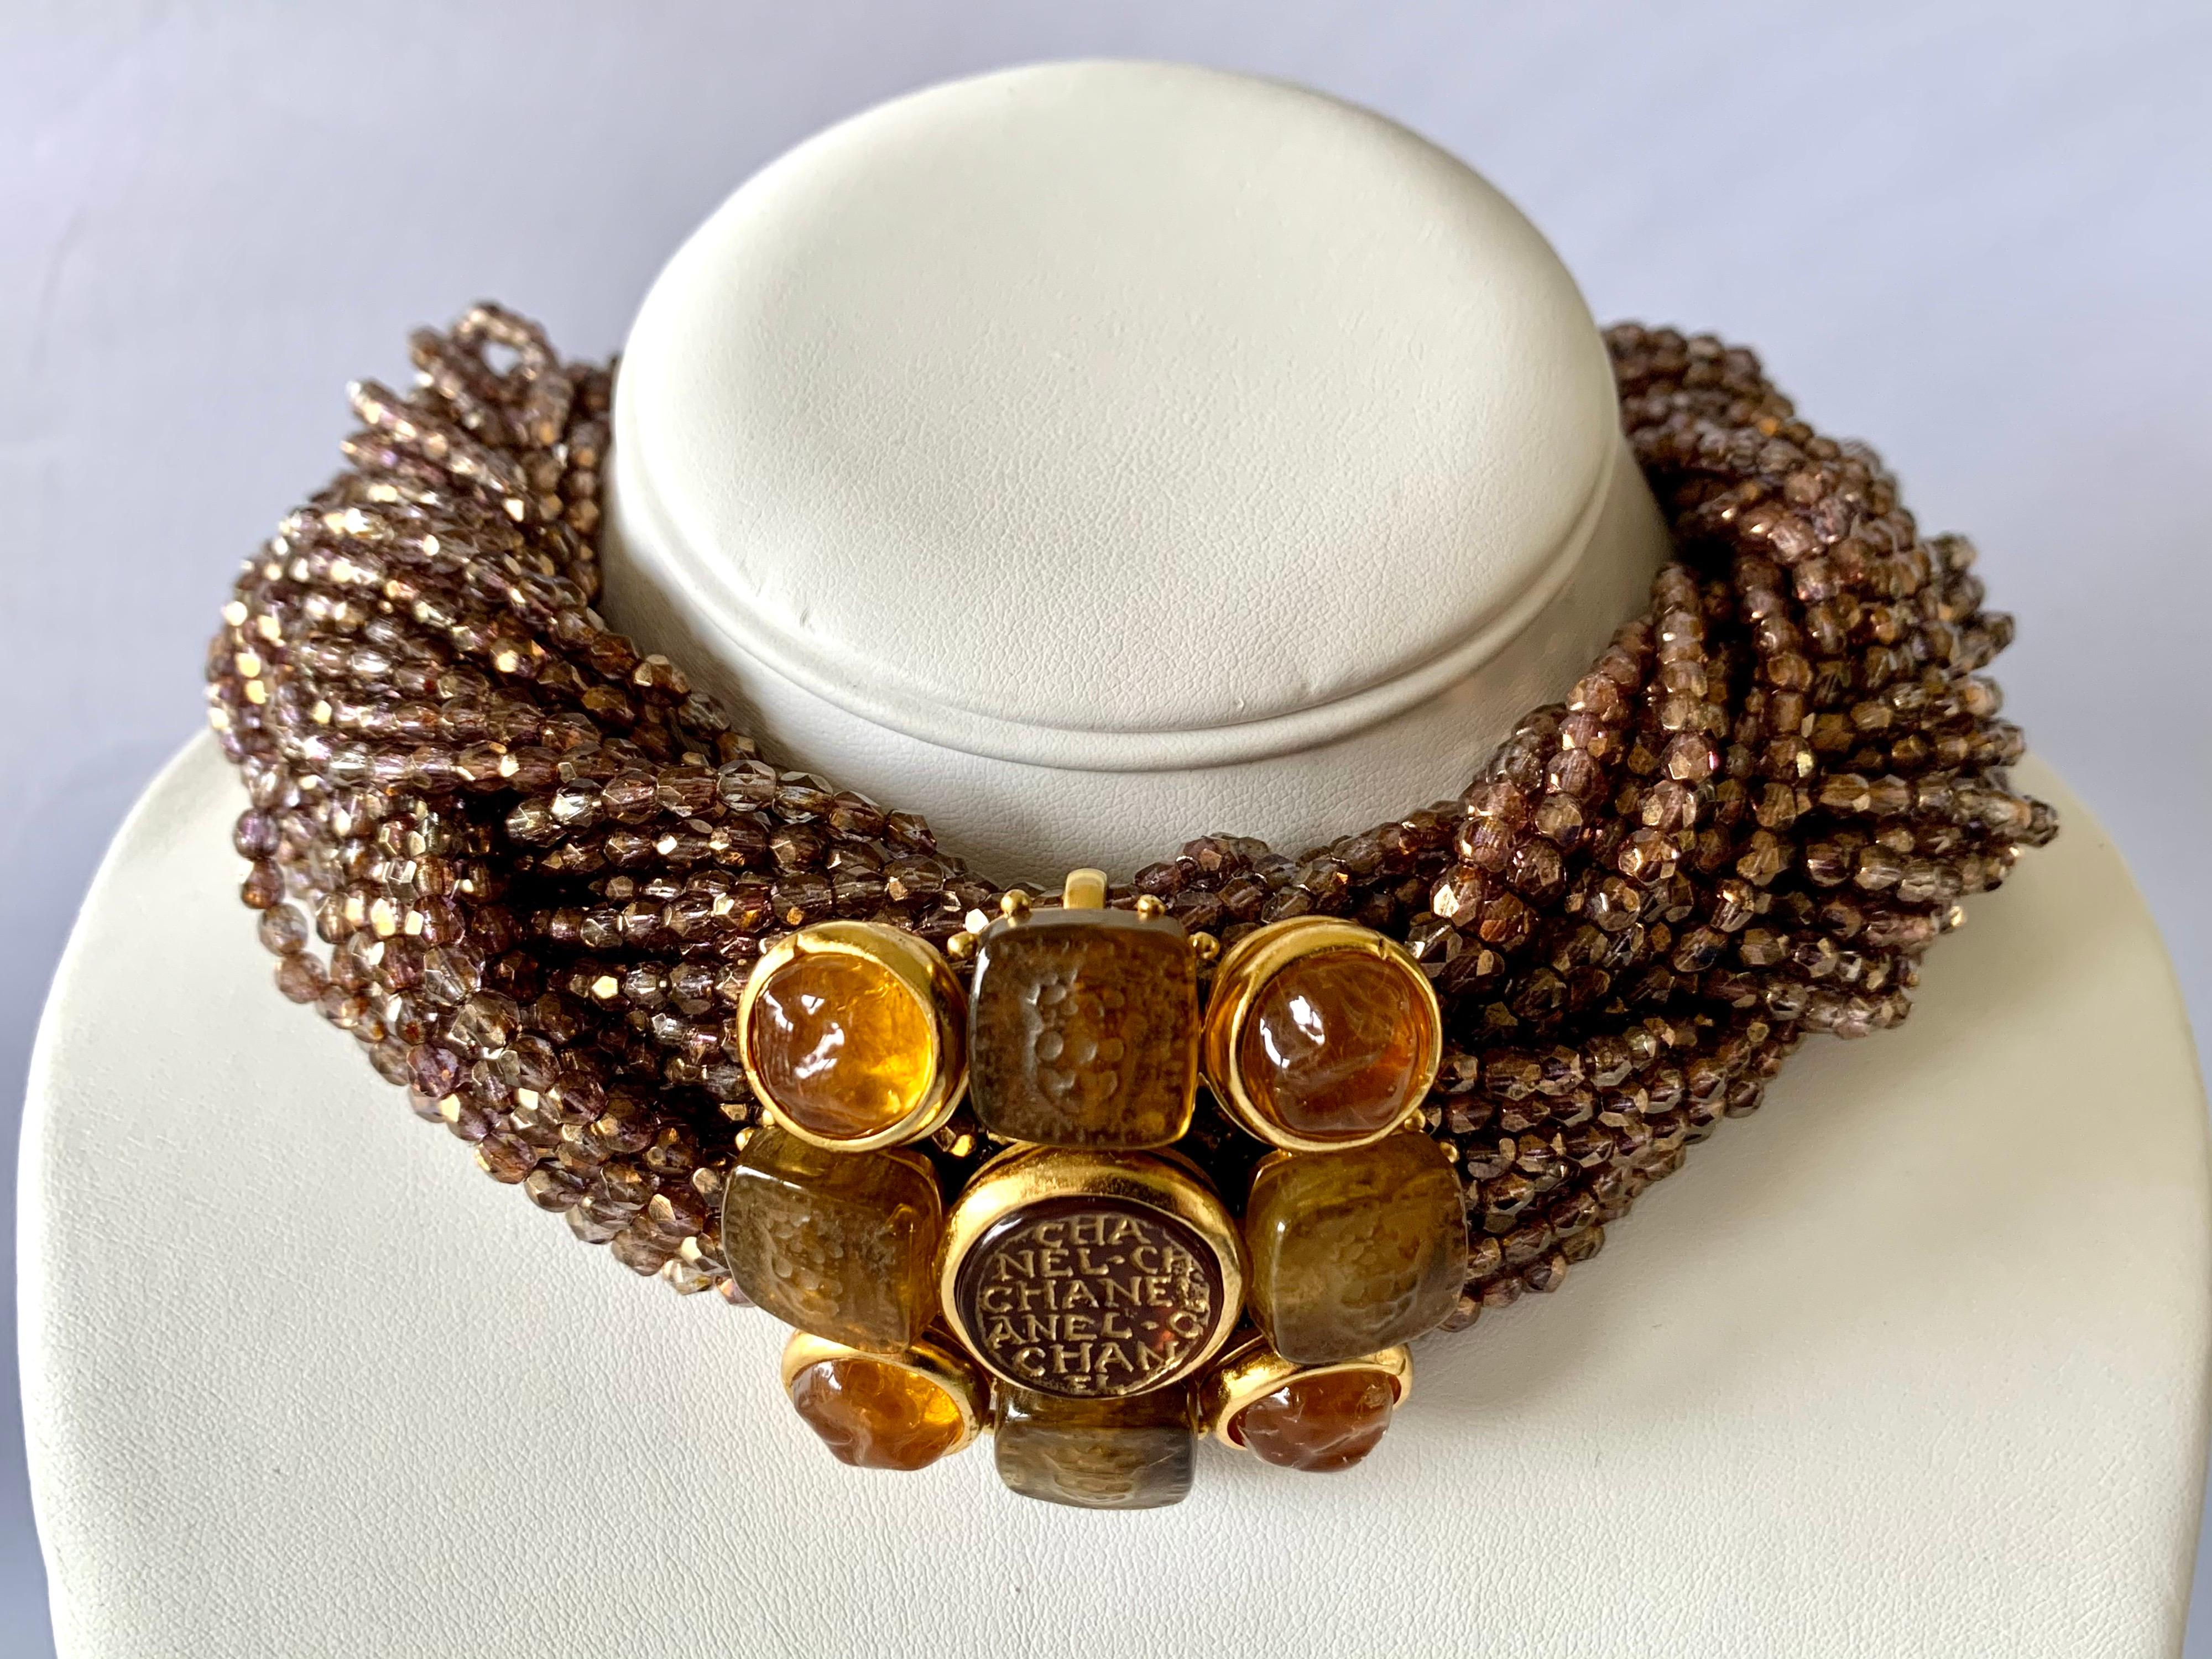 Beeindruckende und seltene Vintage Chanel Haute Couture Halskette - Choker bestehend aus drei geflochtenen Strängen aus schillernden bronze/lila facettierten Glasperlen. In der Mitte der großen Halskette befindet sich ein großes vergoldetes